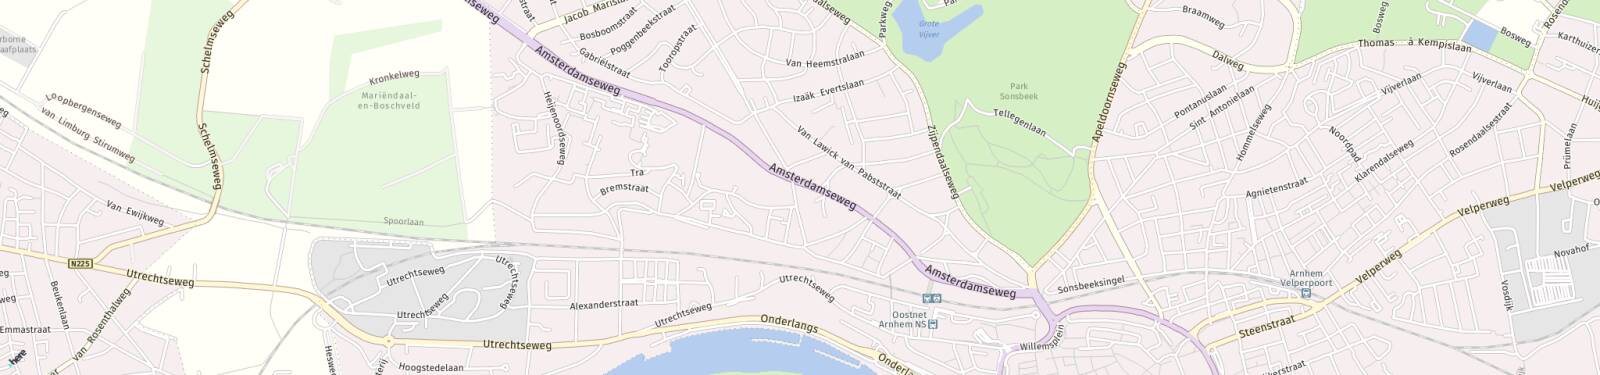 Kaart met locatie Huurwoning Amsterdamseweg